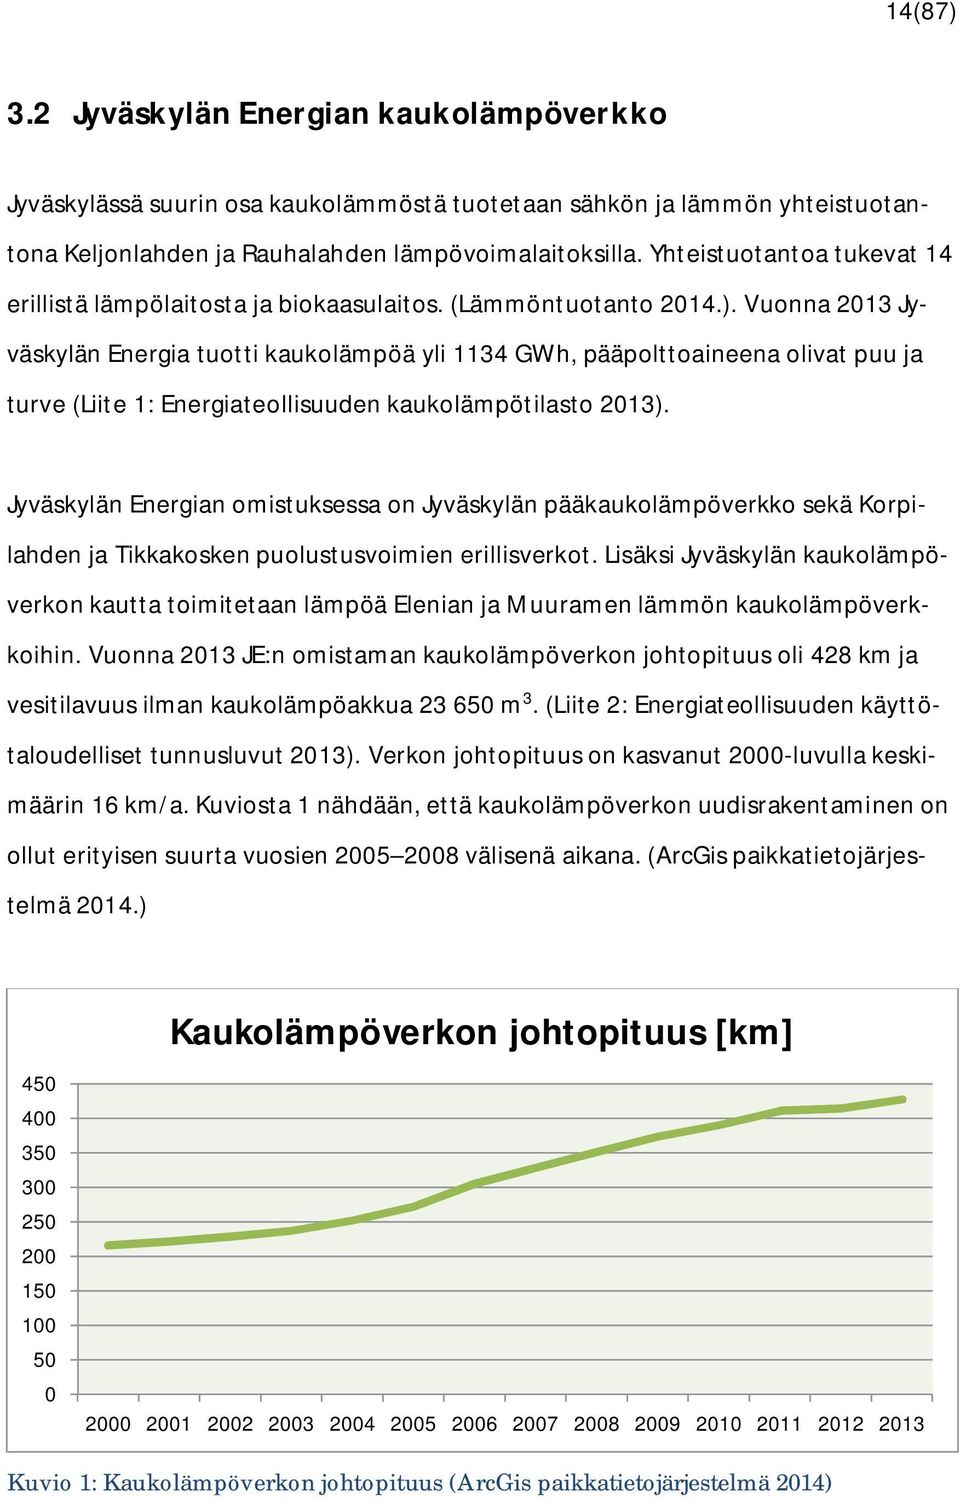 Vuonna 2013 Jyväskylän Energia tuotti kaukolämpöä yli 1134 GWh, pääpolttoaineena olivat puu ja turve (Liite 1: Energiateollisuuden kaukolämpötilasto 2013).